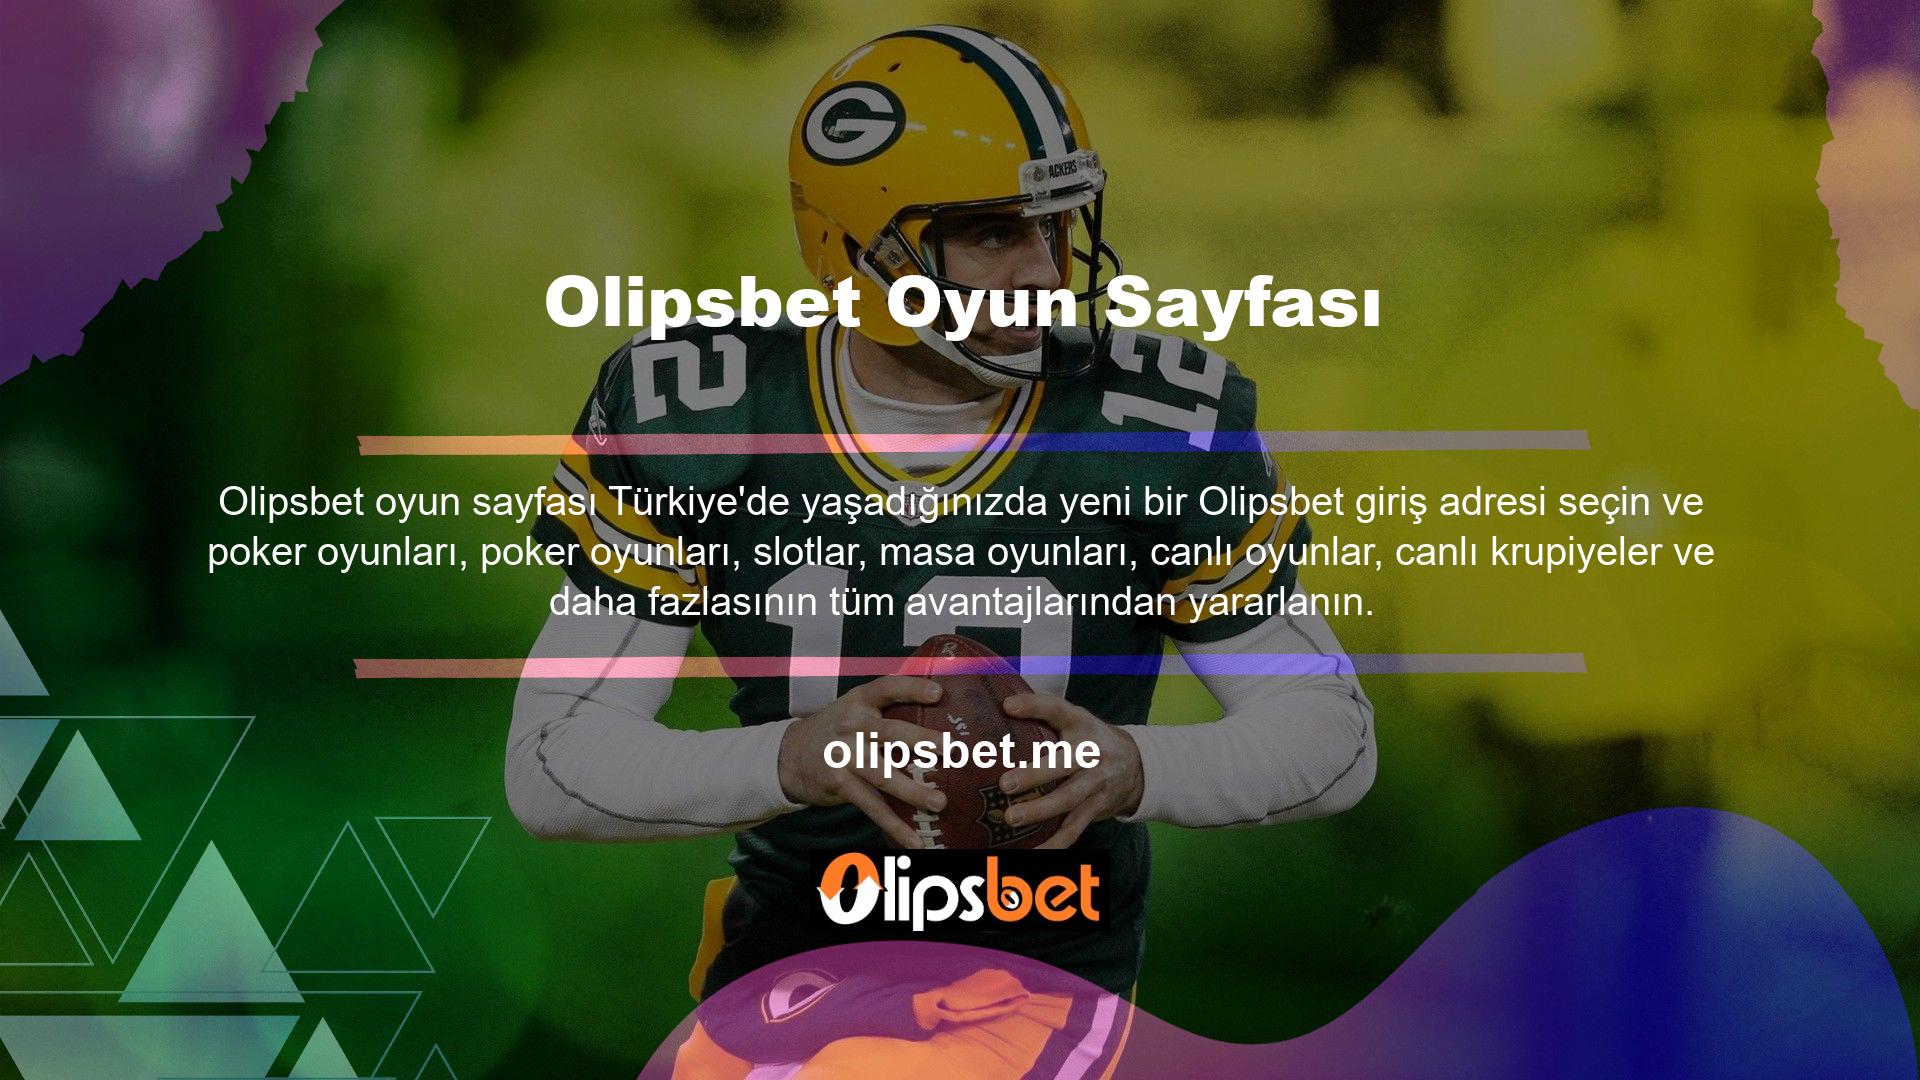 Olipsbet oyun sayfası